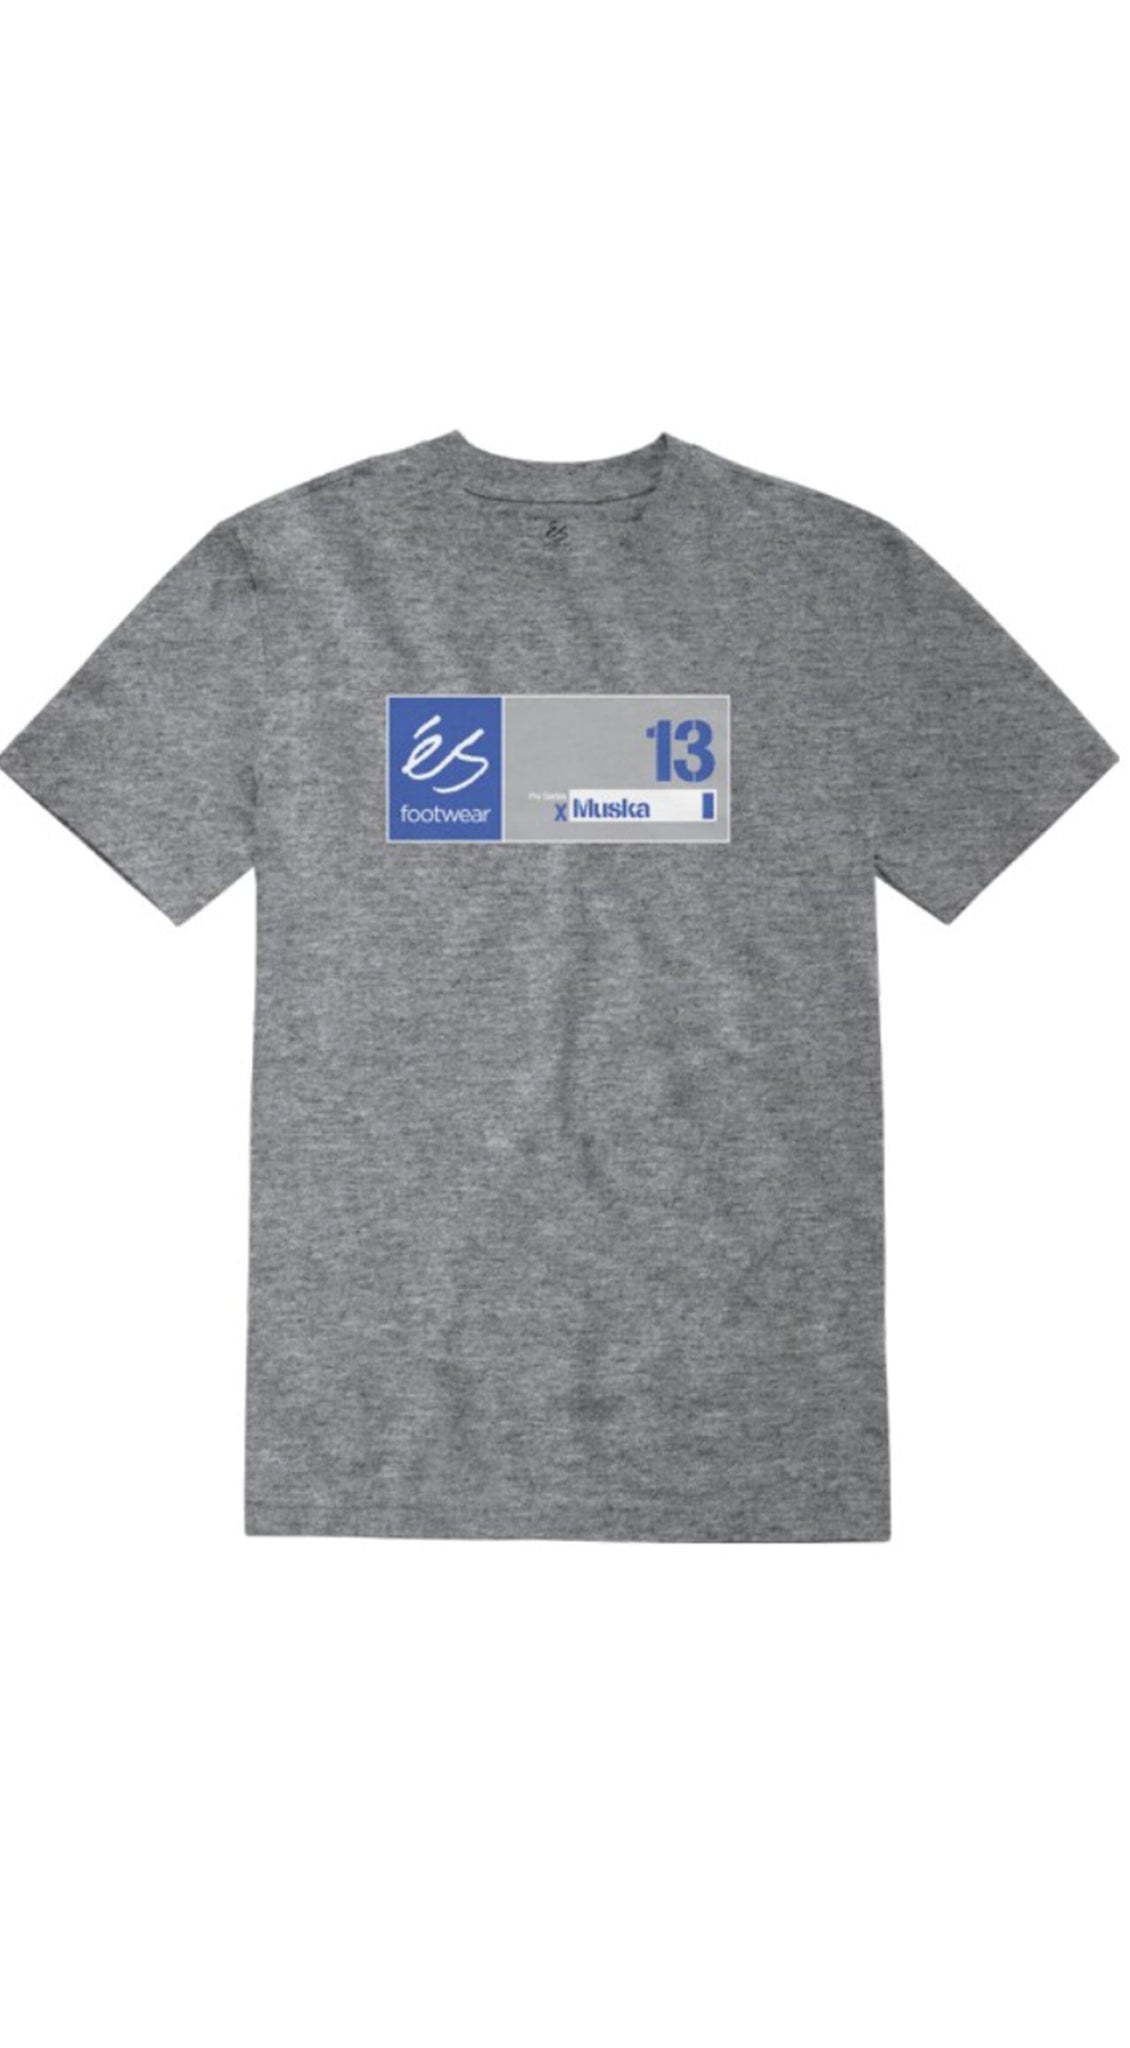 és MUSKA 13 TEE Grey Tshirt- Camiseta- Prebook Ropa eS Skateboarding 